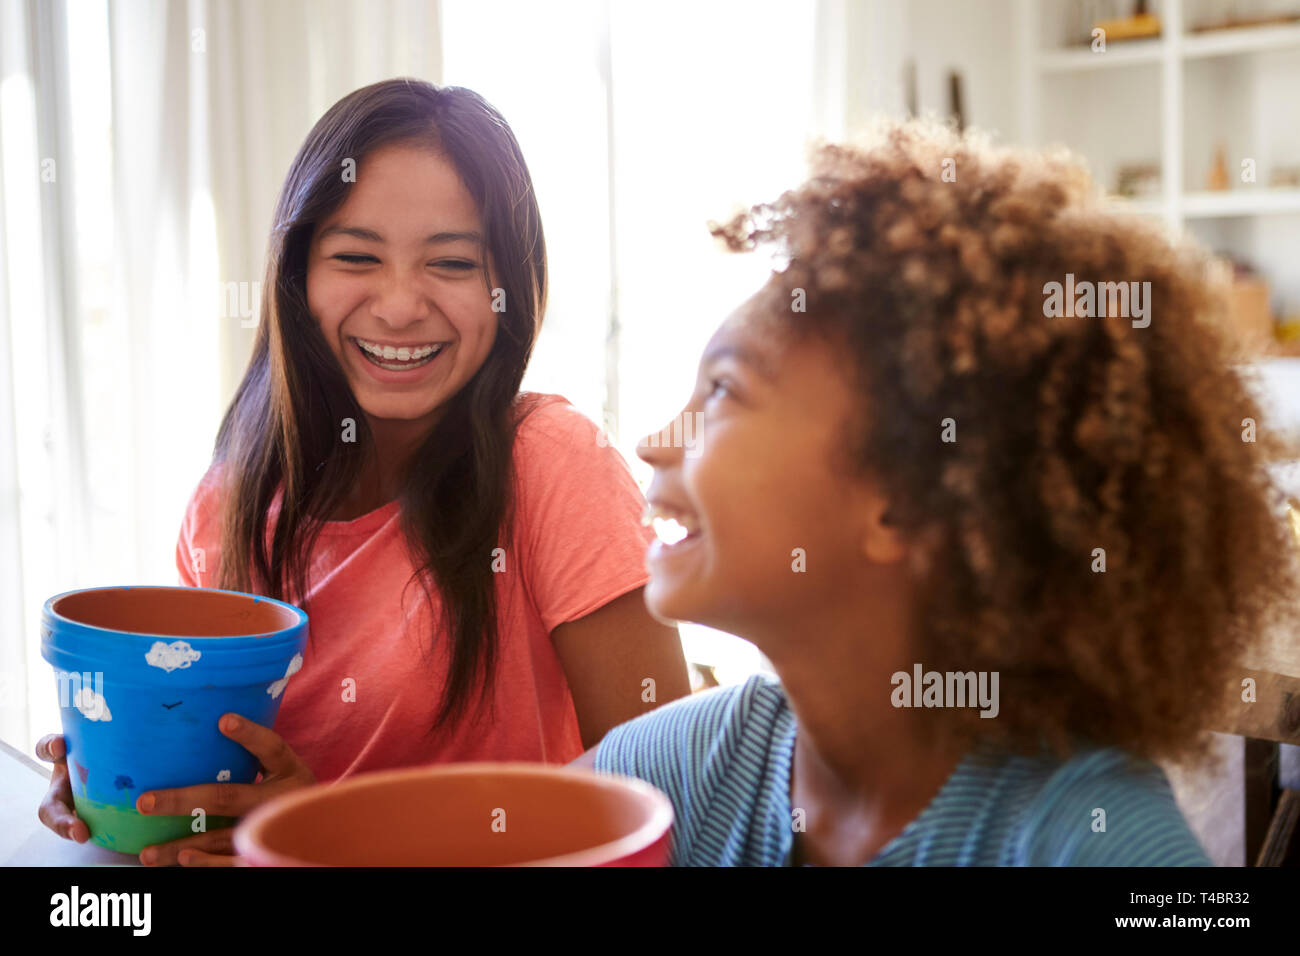 Lachend vor - jugendlich Mädchen und ihre ältere Freundin, Blumentöpfe, dass Sie mit Farben zu Hause, selektiven Fokus eingerichtet haben, in der Nähe Stockfoto